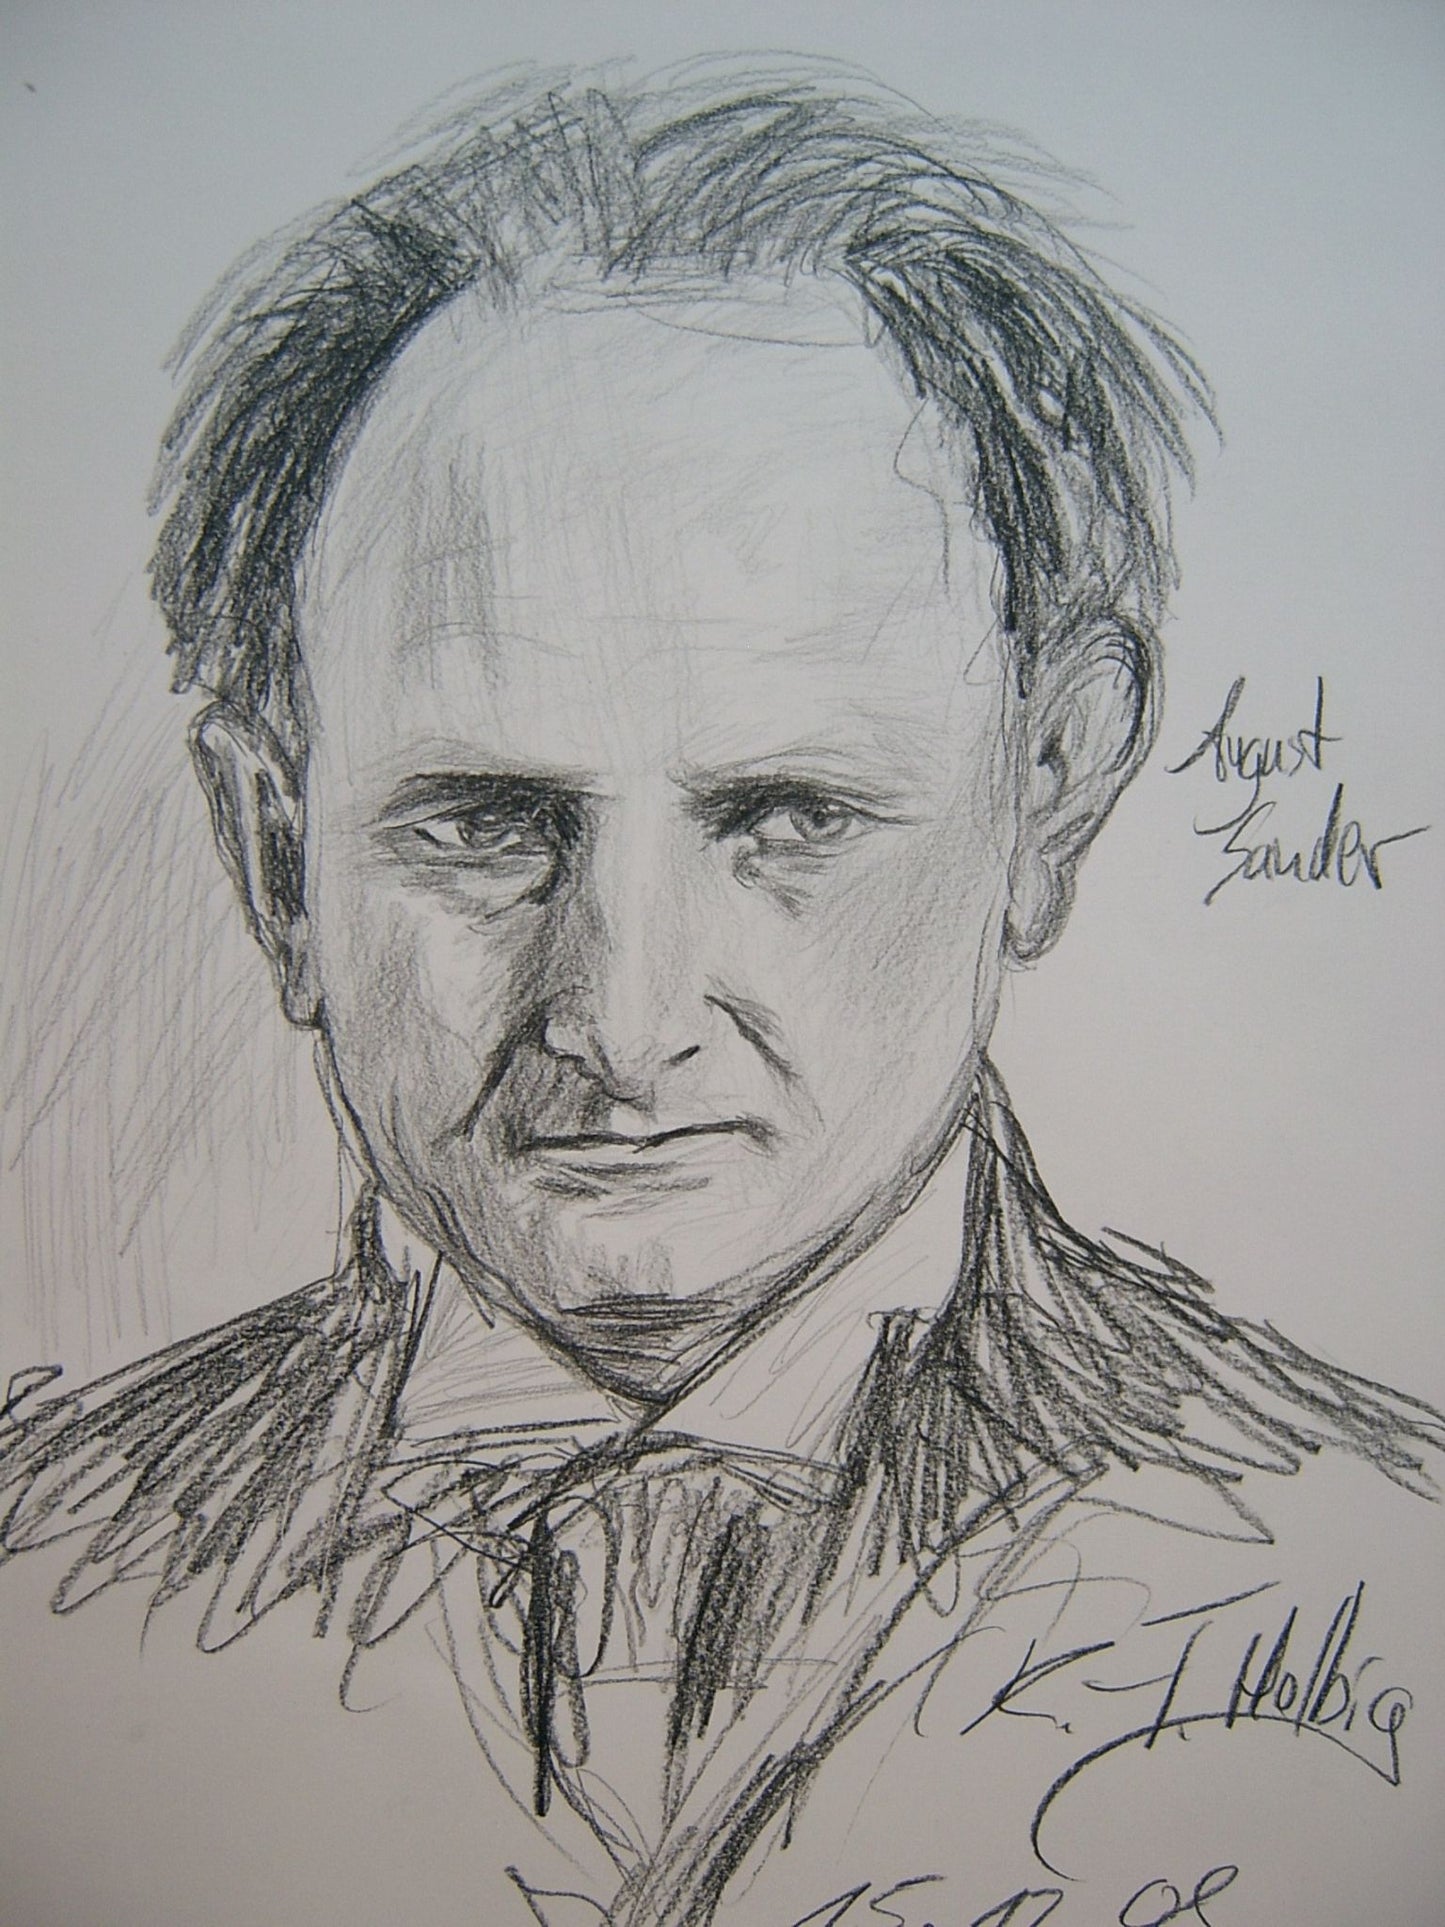 Portrait von August Sander - 42cm x 30cm